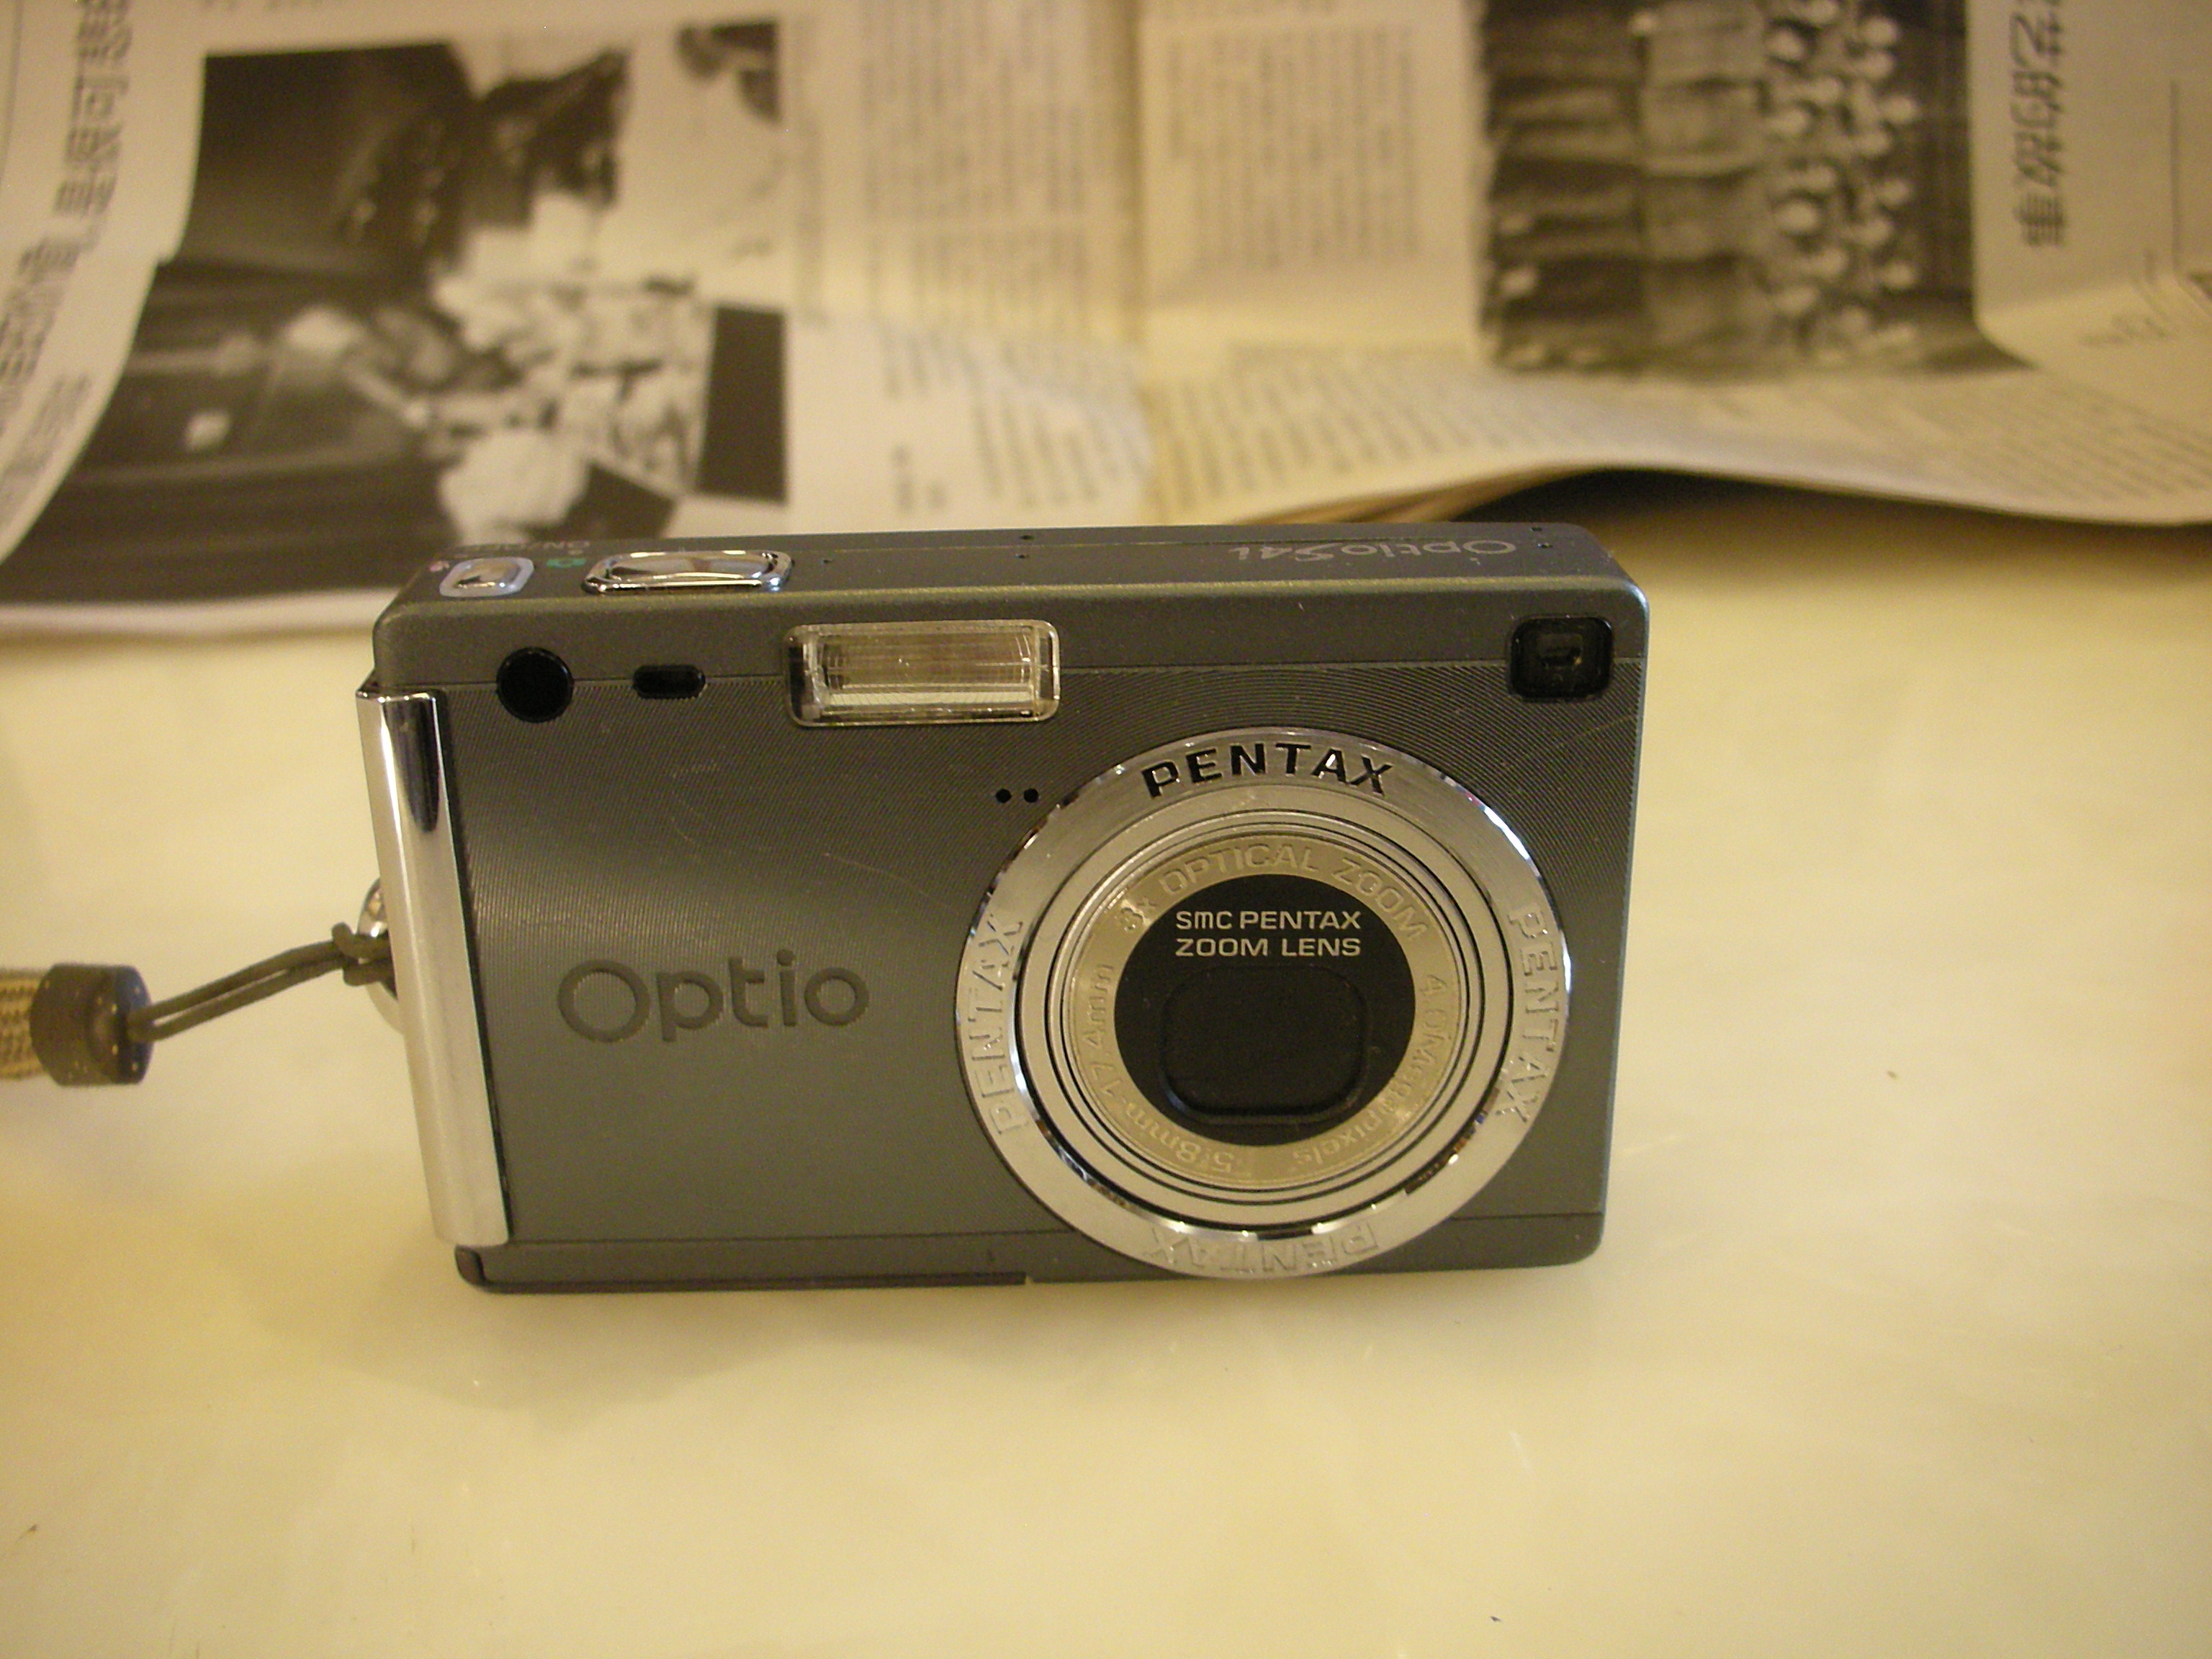 很新宾得 Optio S4i经典数码相机